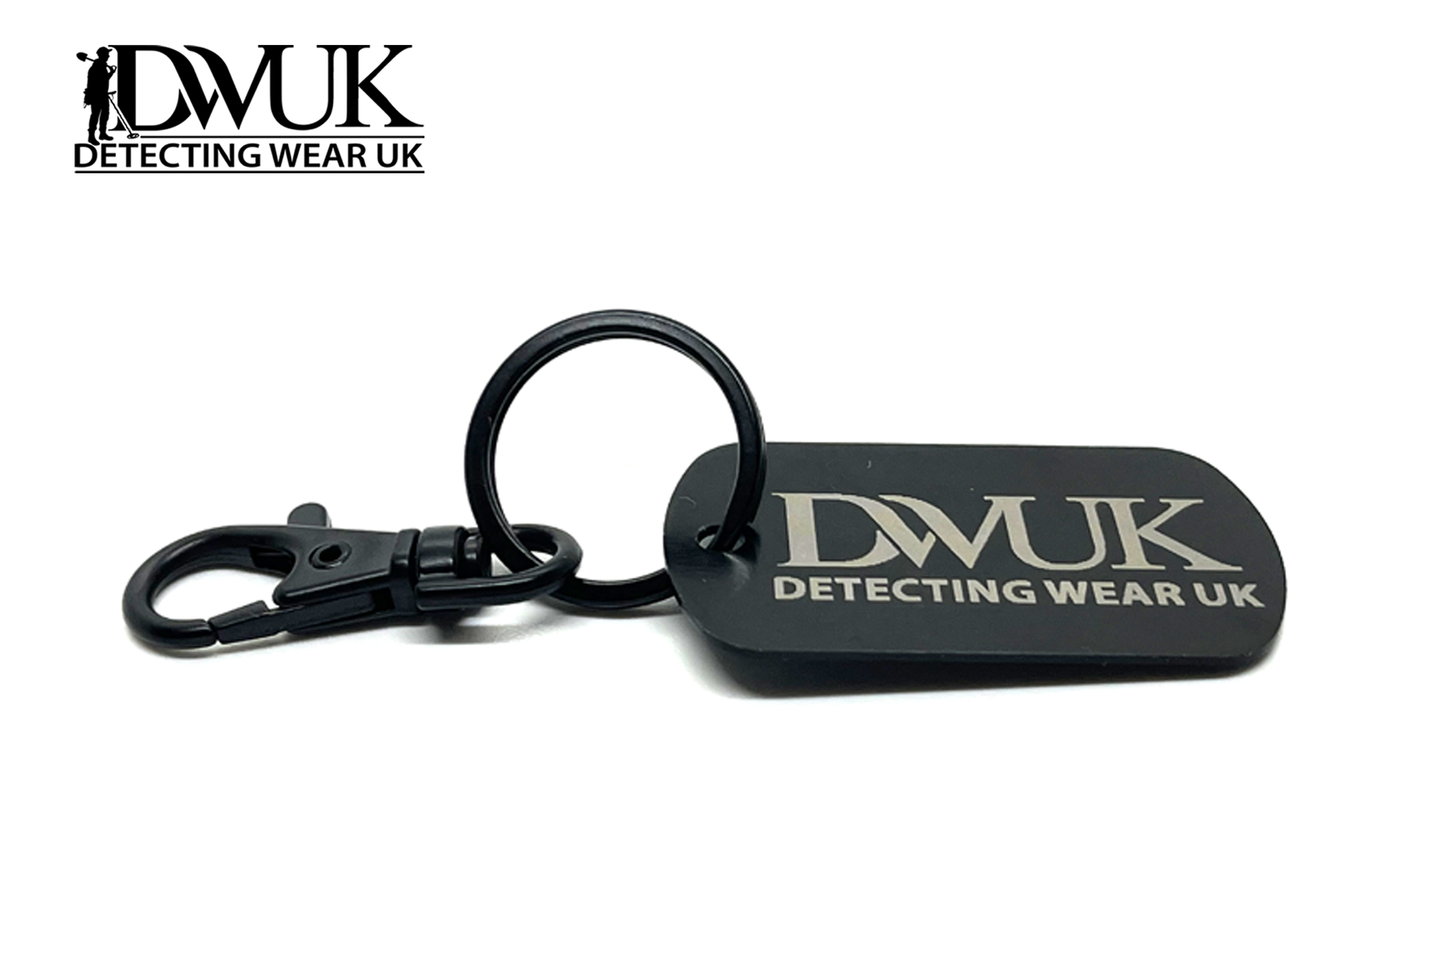 Detecting Wear UK Engraved Aluminium Keyring